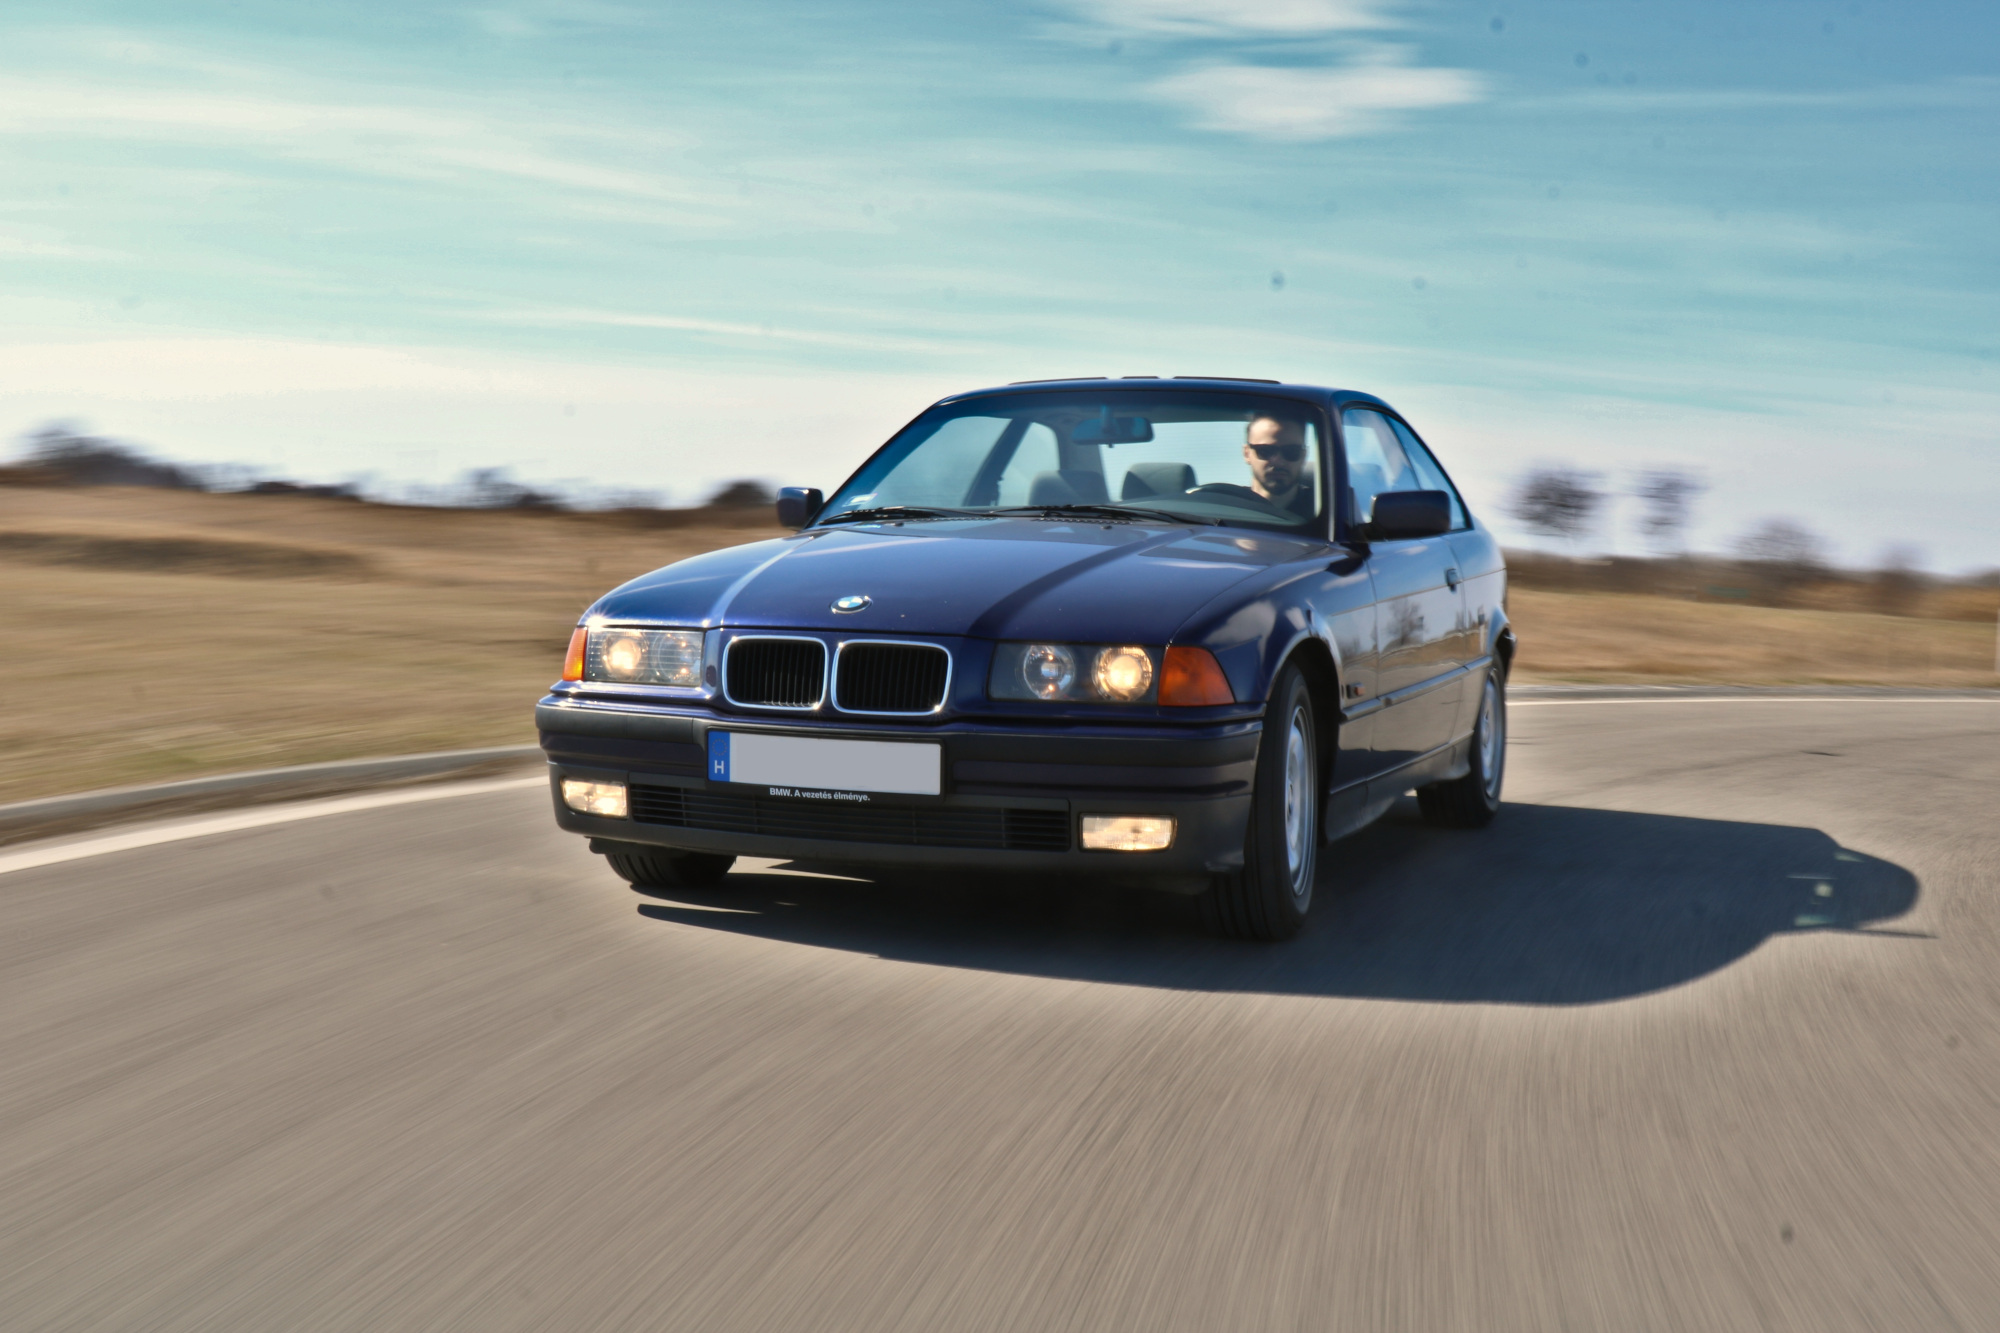 Vezetni mindig élmény – Elmondom, miért tartok egy E36-os BMW-t 12